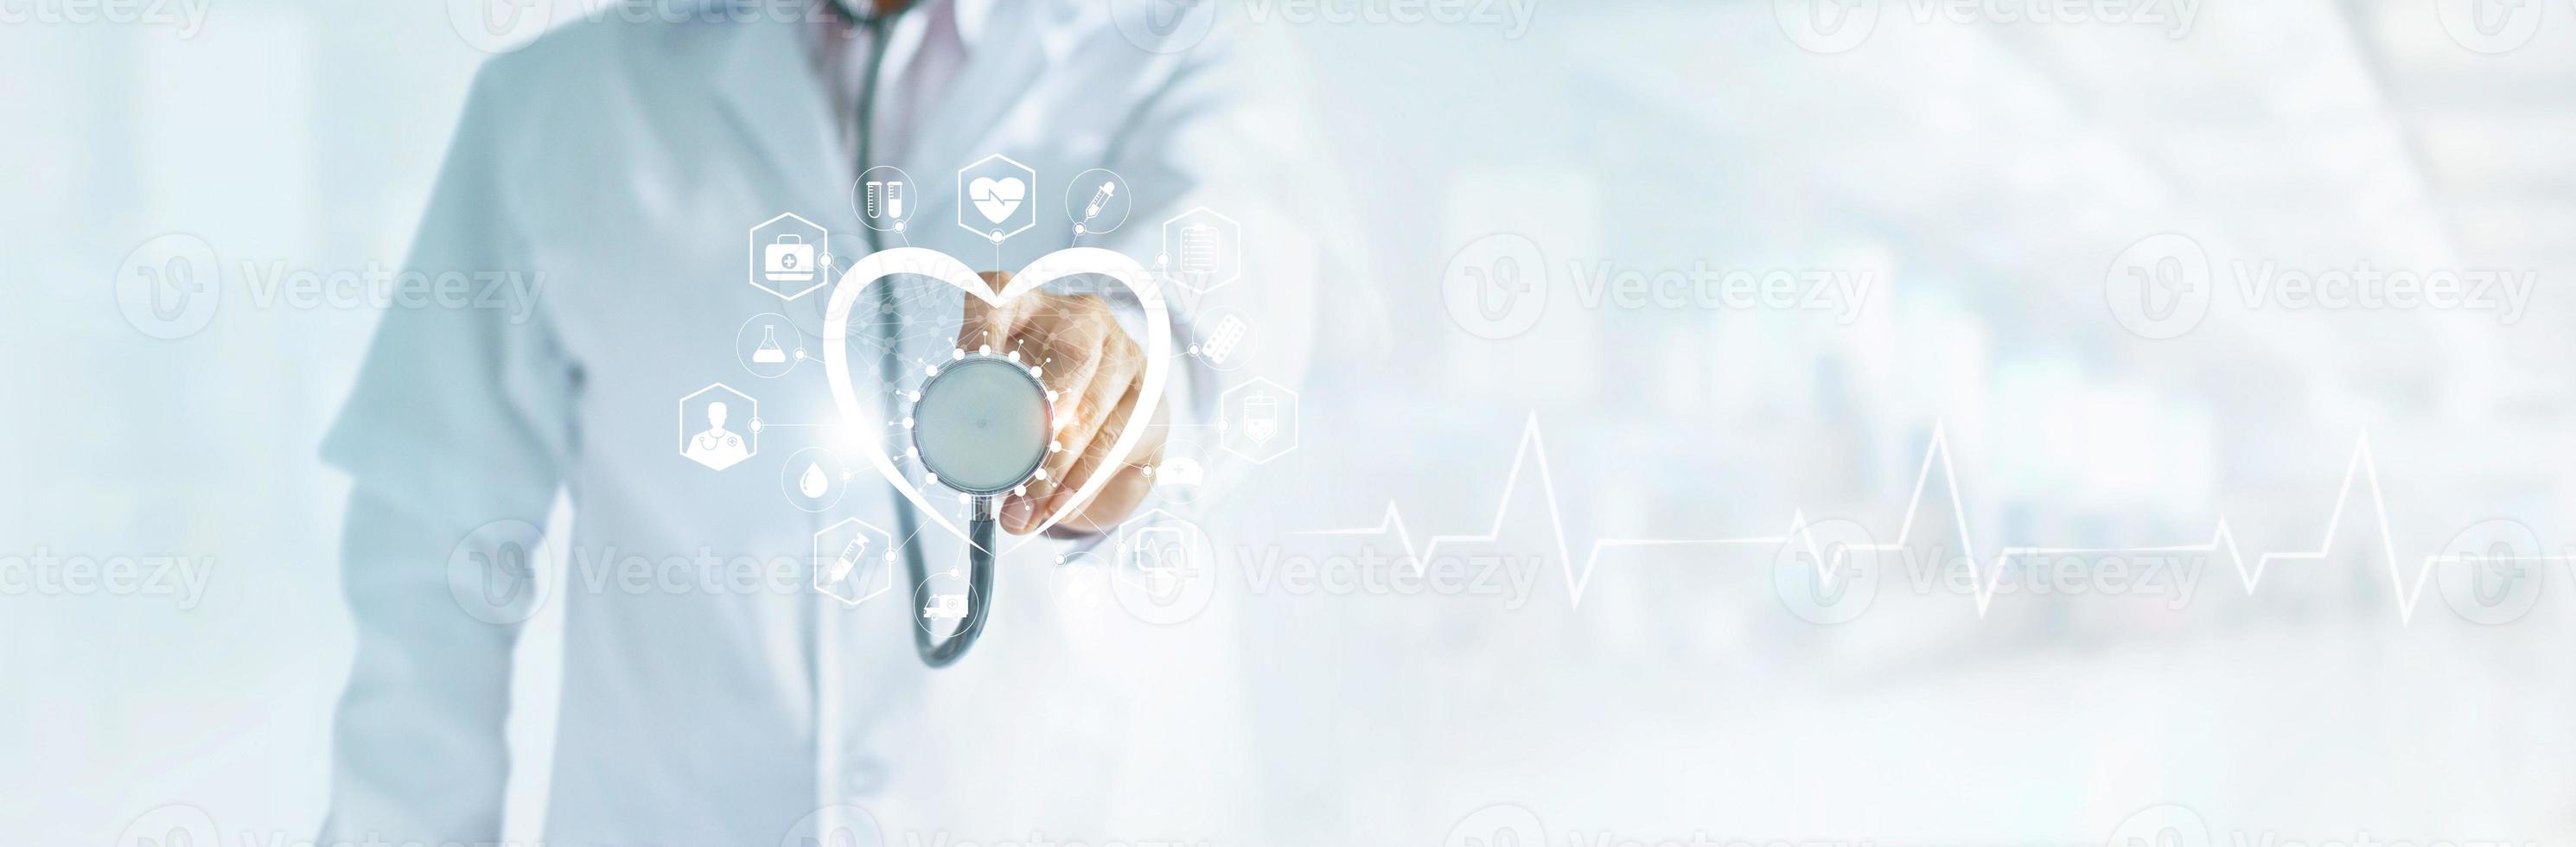 kardiolog läkare med stetoskop i handen som sänder medicinsk ikon nätverksanslutning på modern virtuell skärm nätverksgränssnitt, medicinsk teknik och patientkoncept, tom text foto